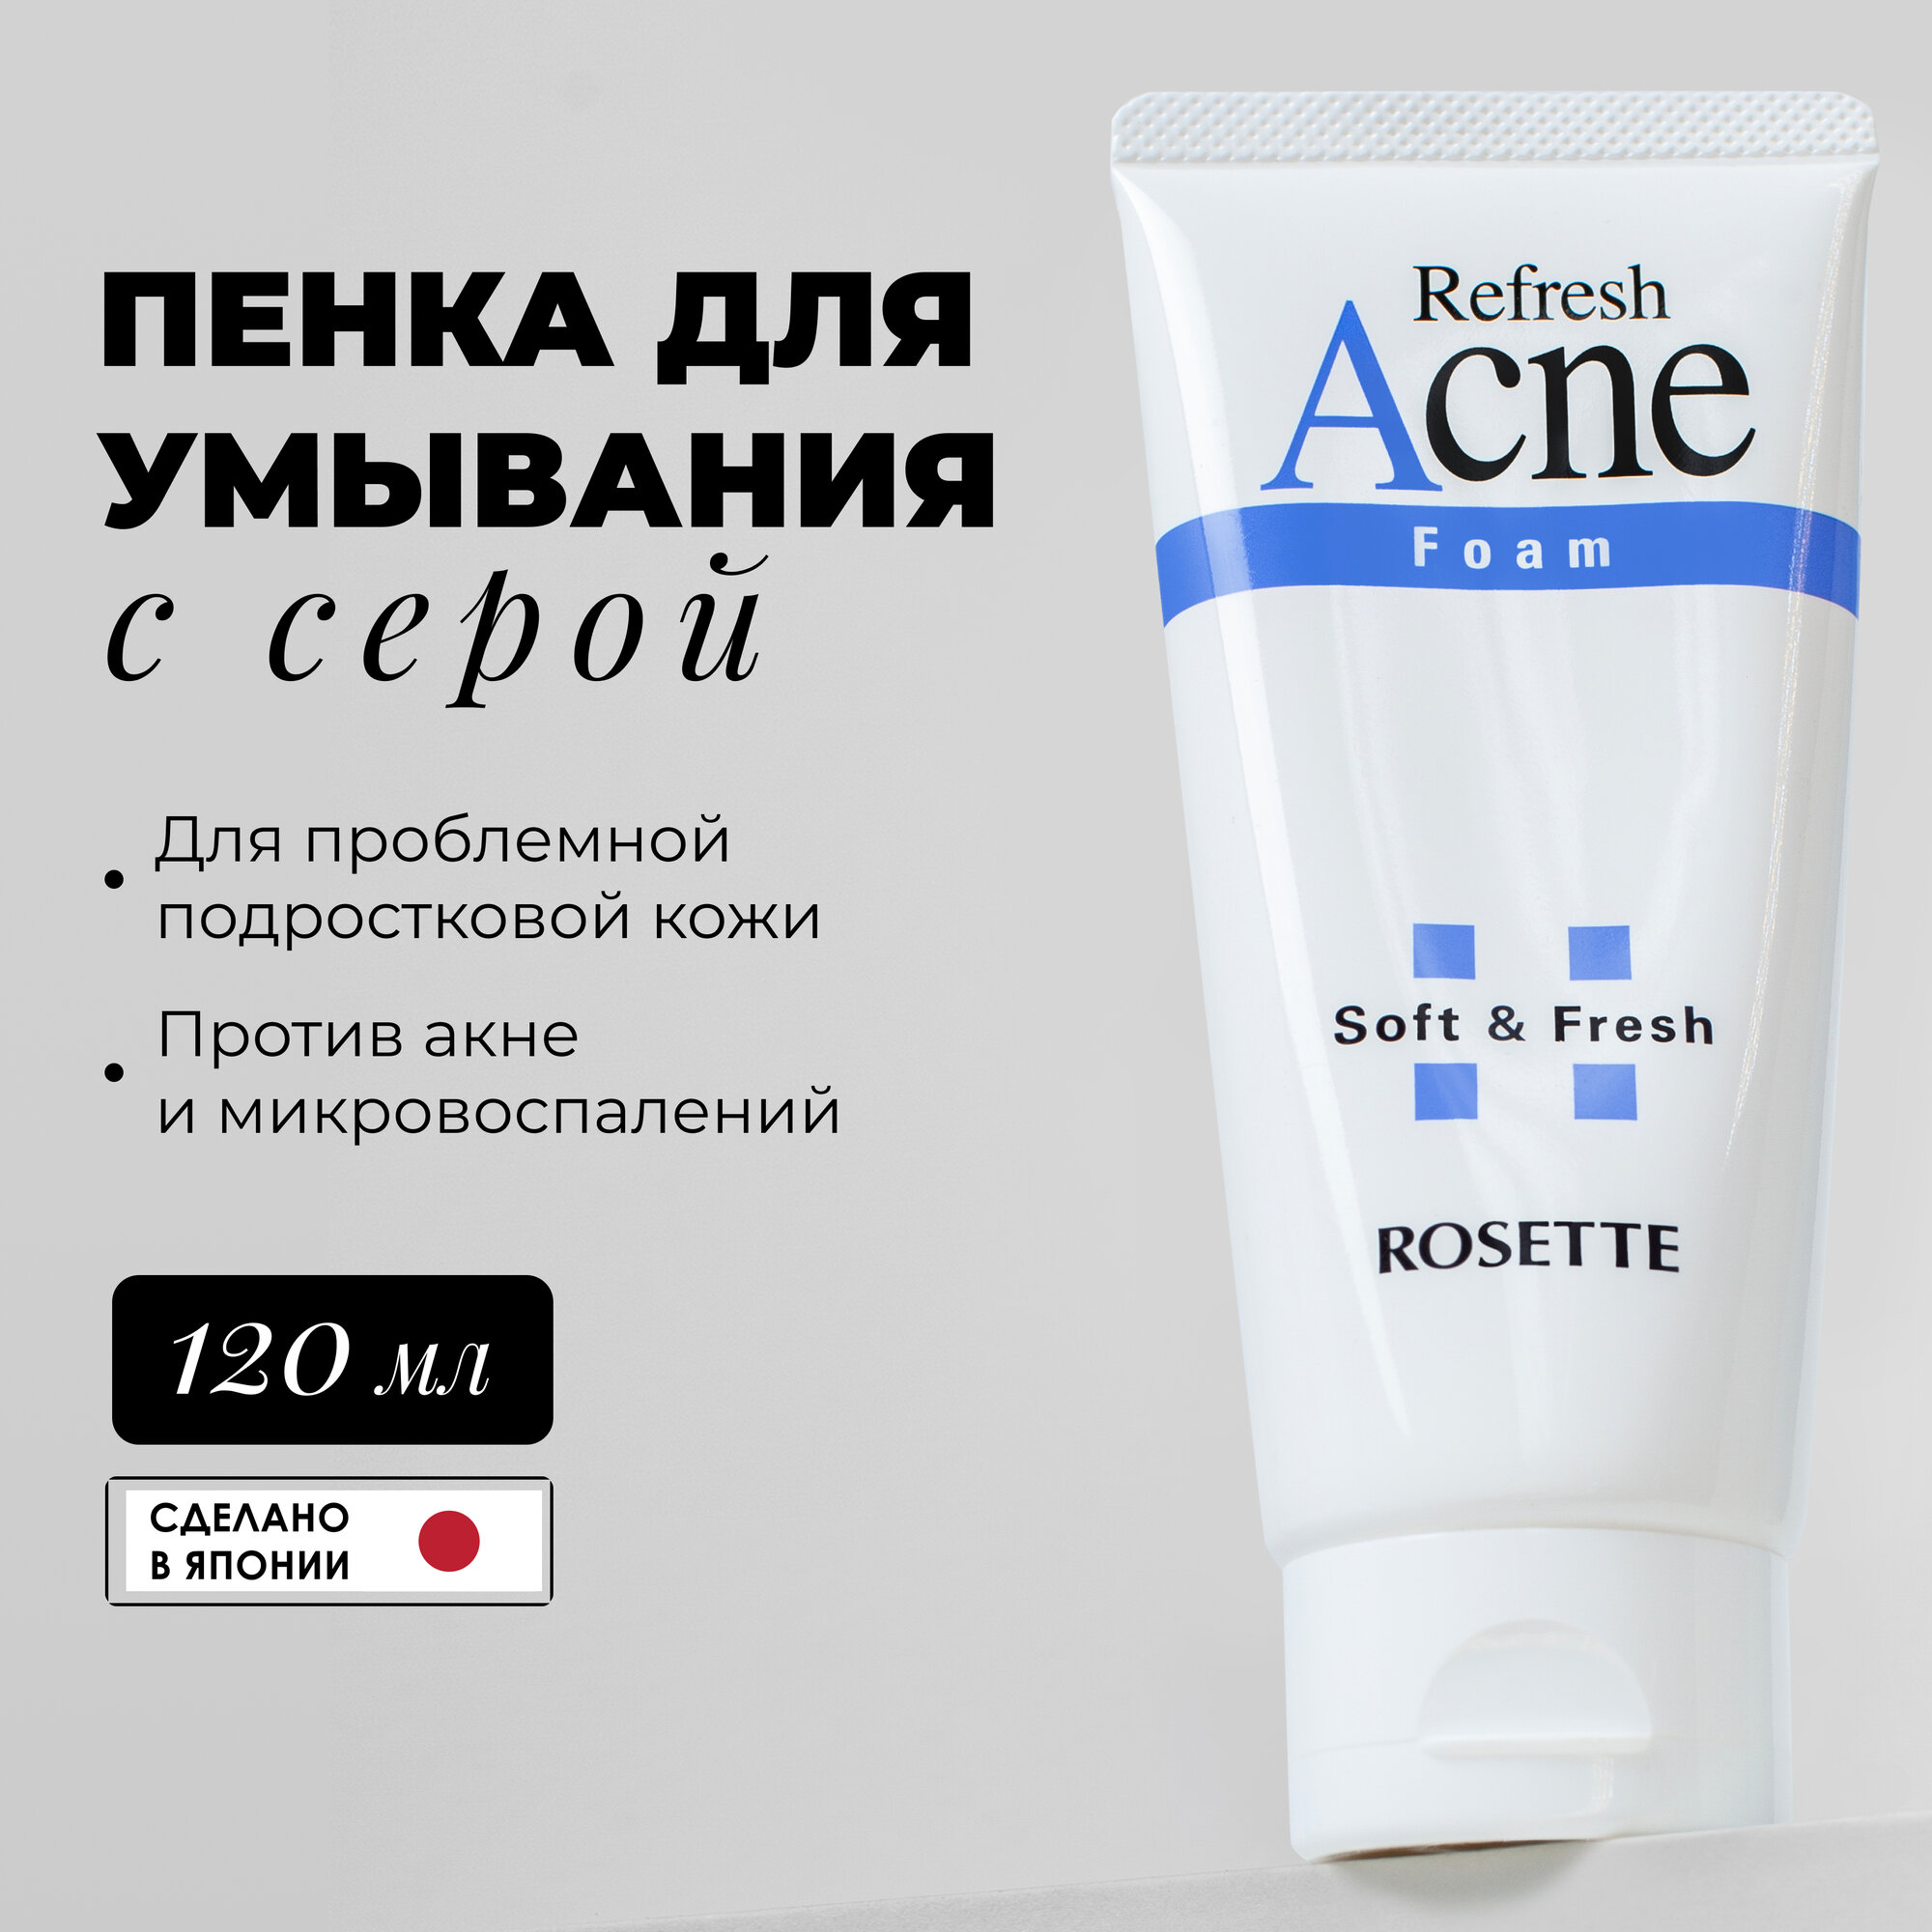 Пенка для умывания Acne Foam, для проблемной подростковой кожи с серой 120 гр, Rosette Acne Foam